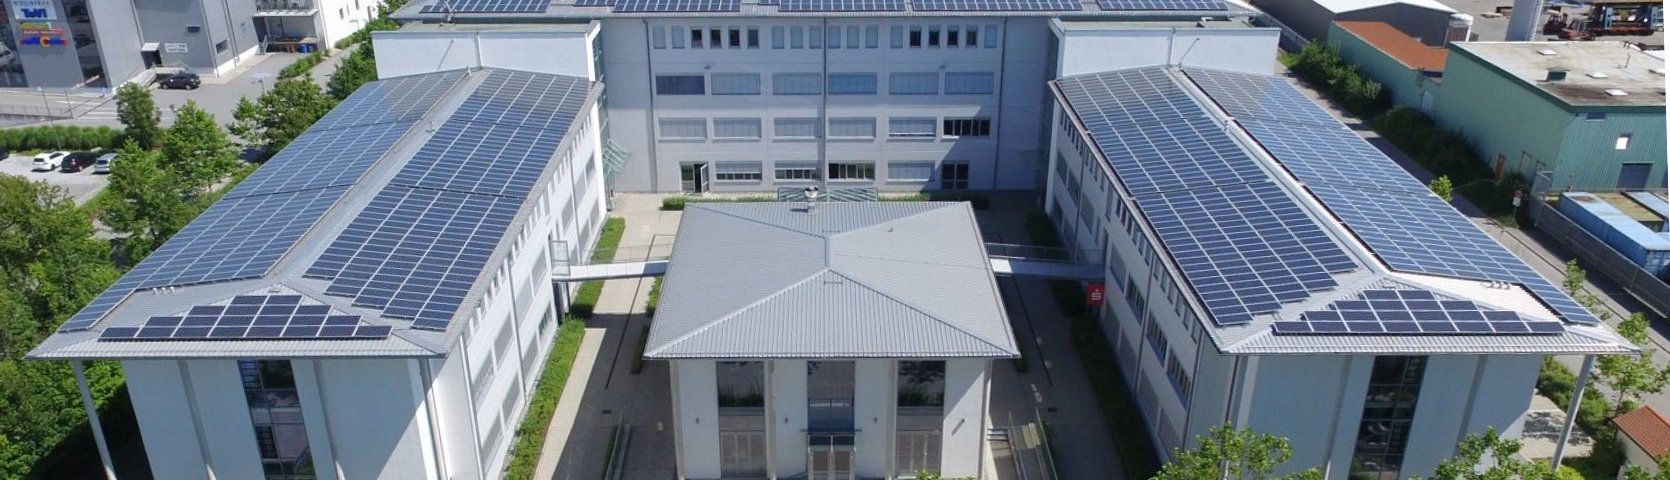 Zentrum für Akademische Weiterbildung der Technischen Hochschule Deggendorf